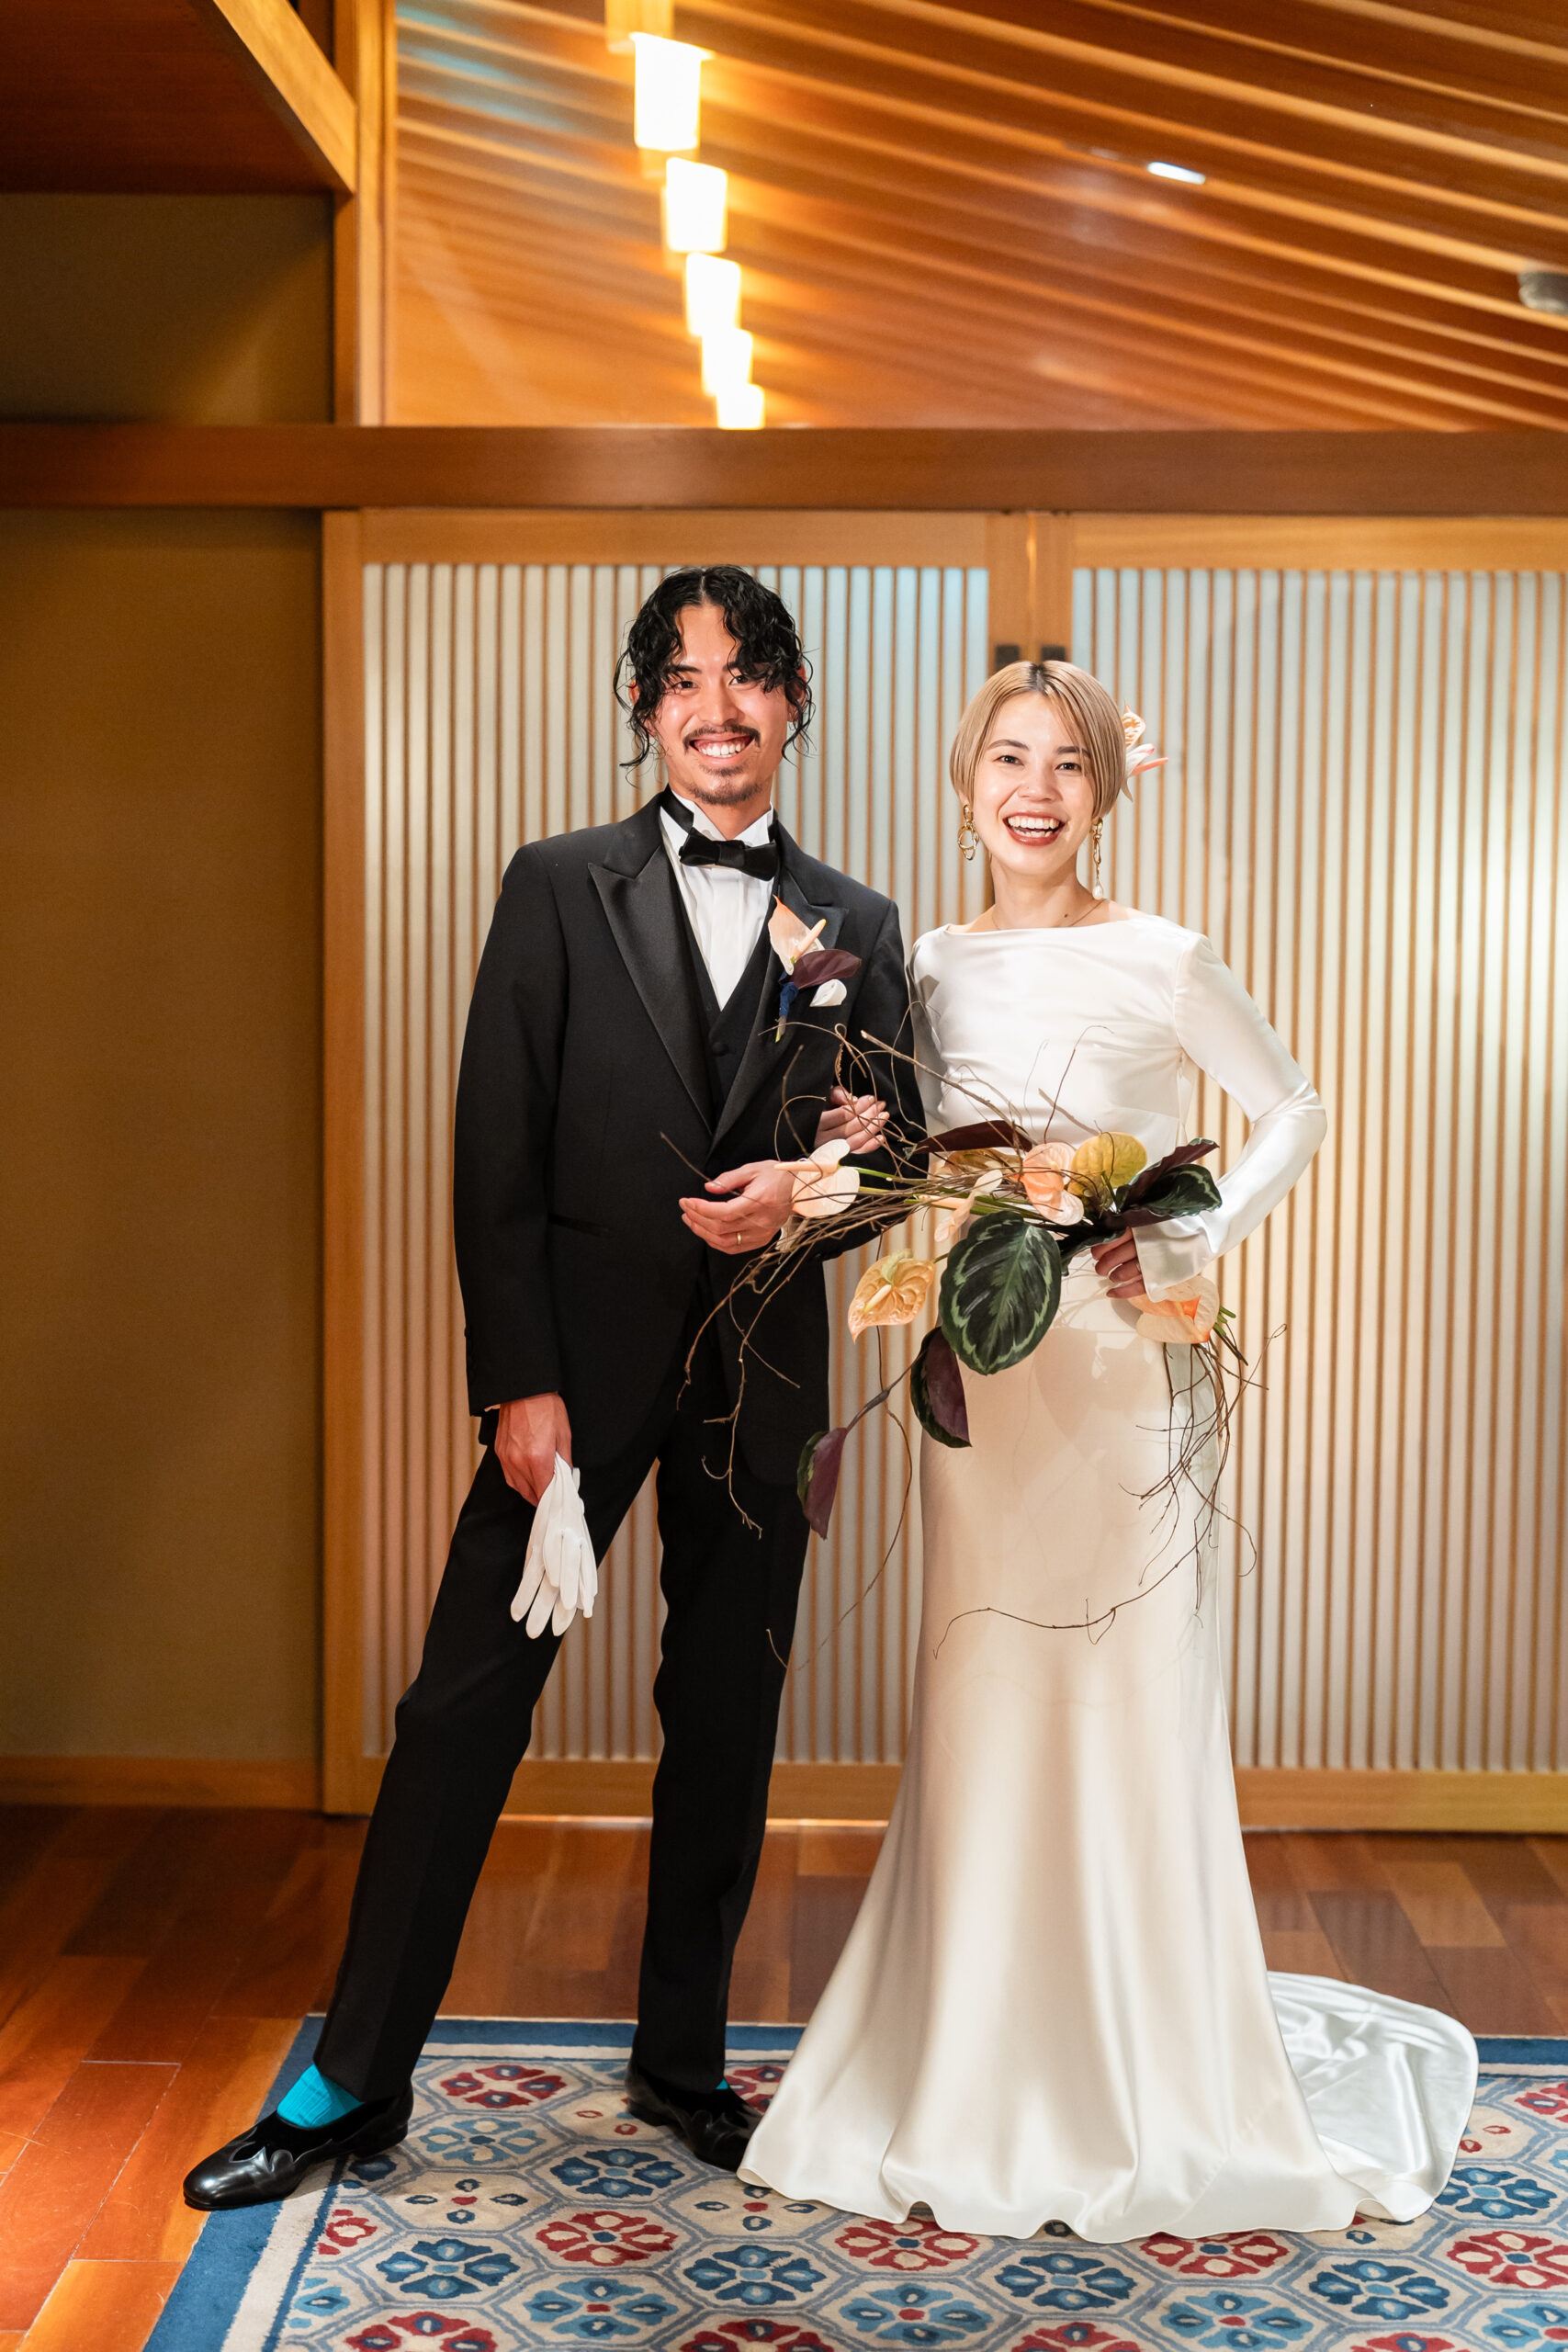 大注目のインポートブランド ダニエル フランルのウェディングドレスを名古屋の結婚式会場、料亭 河文にてお色直し衣装として着用されています